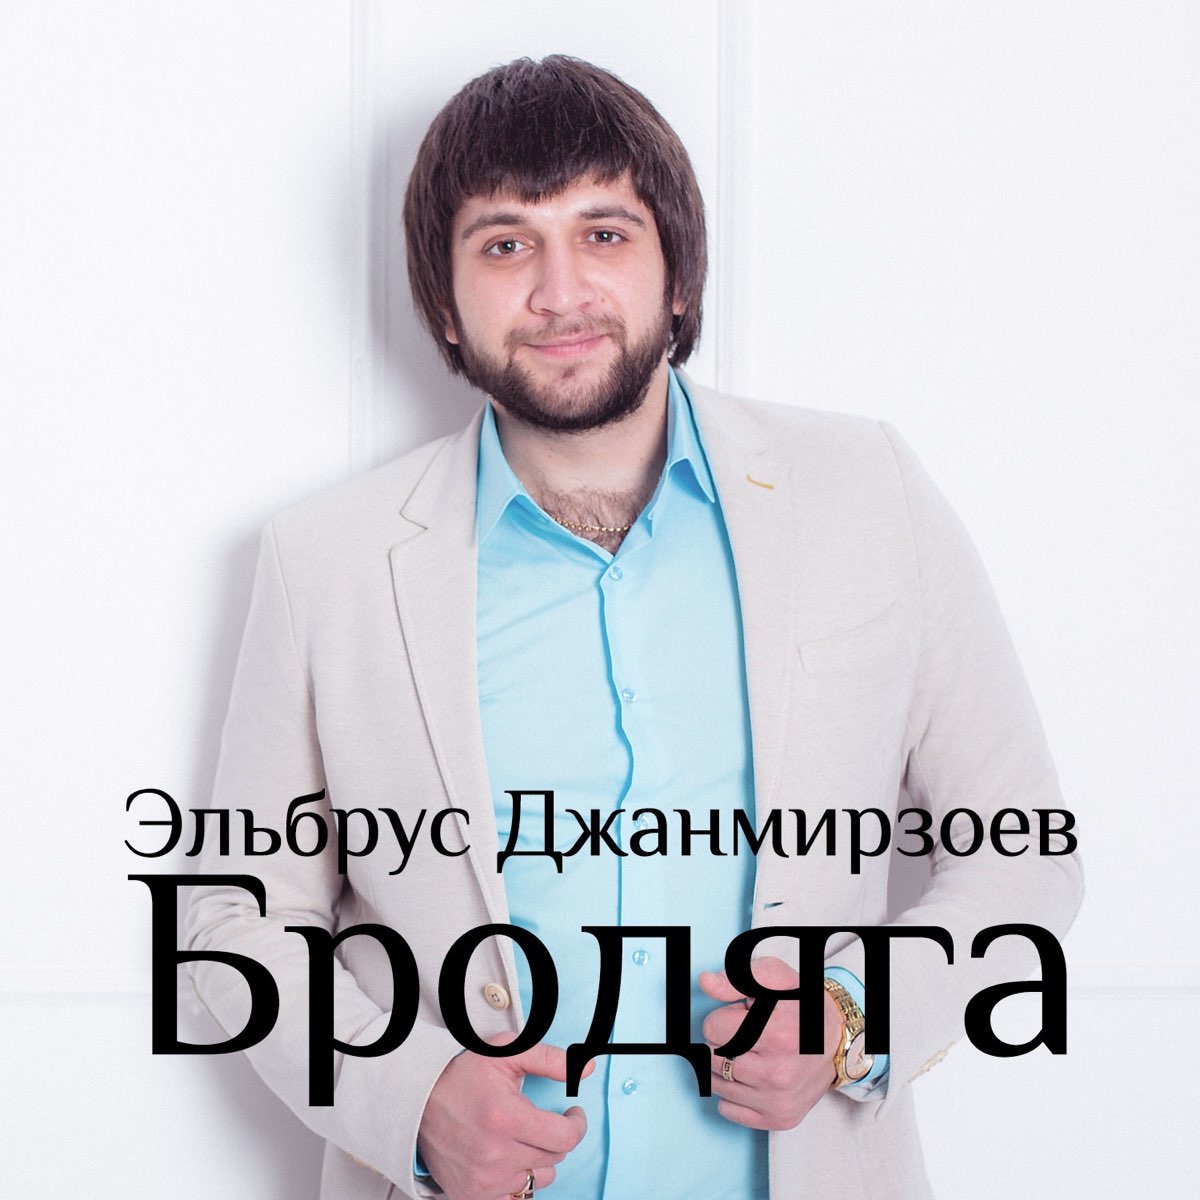 Альбом "Бродяга" (Эльбрус Джанмирзоев) .